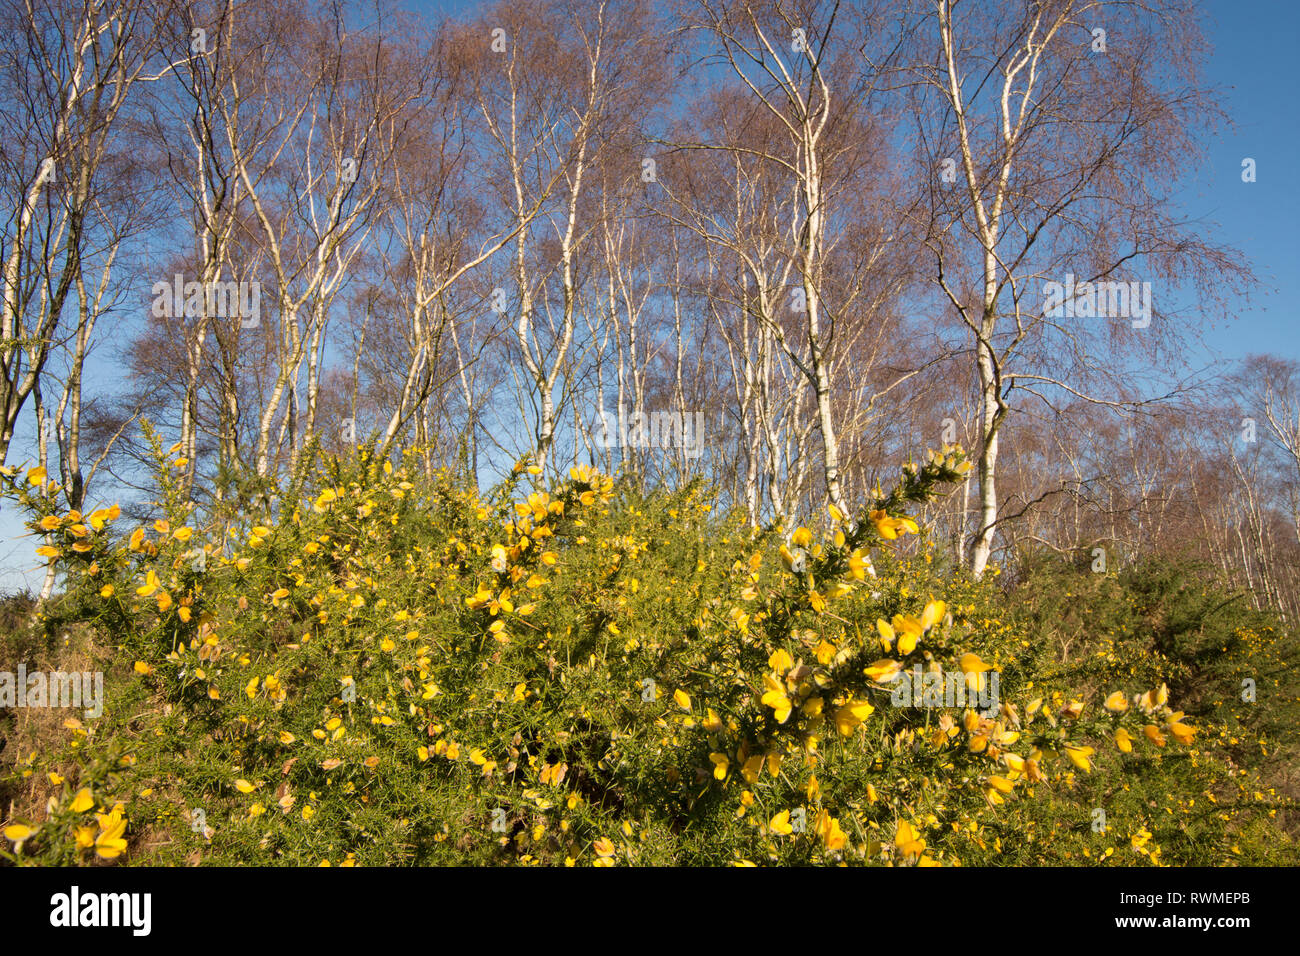 L'ajonc commun, Ulex europaeus, argent sous les bouleaux, Betula pendula, sur commune Iping, Sussex, UK. Banque D'Images